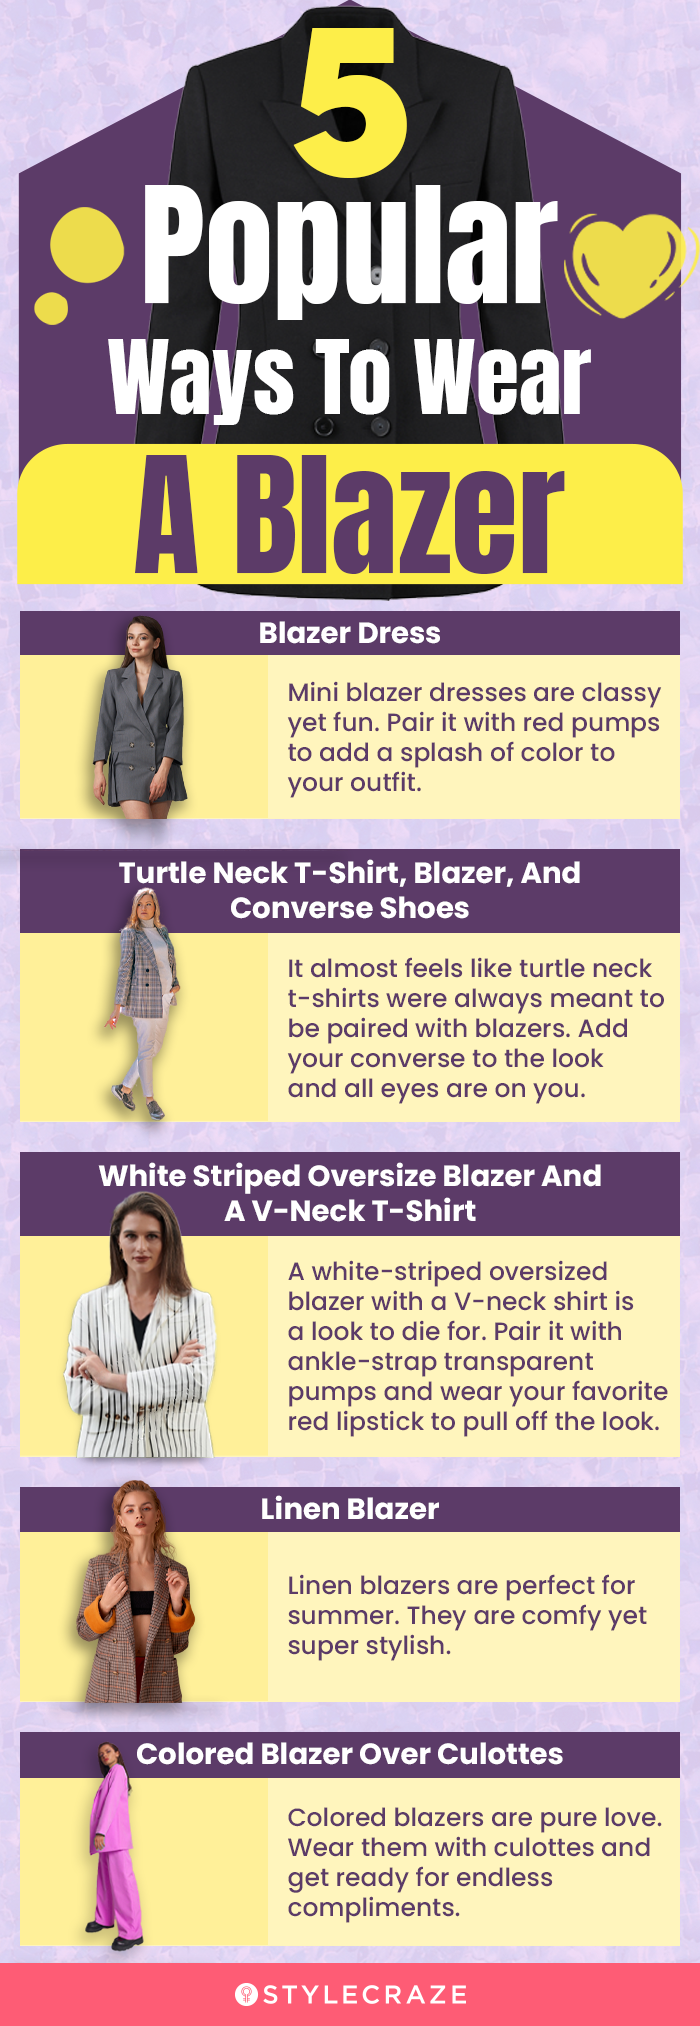 5 popular ways to wear a blazer [infographic]